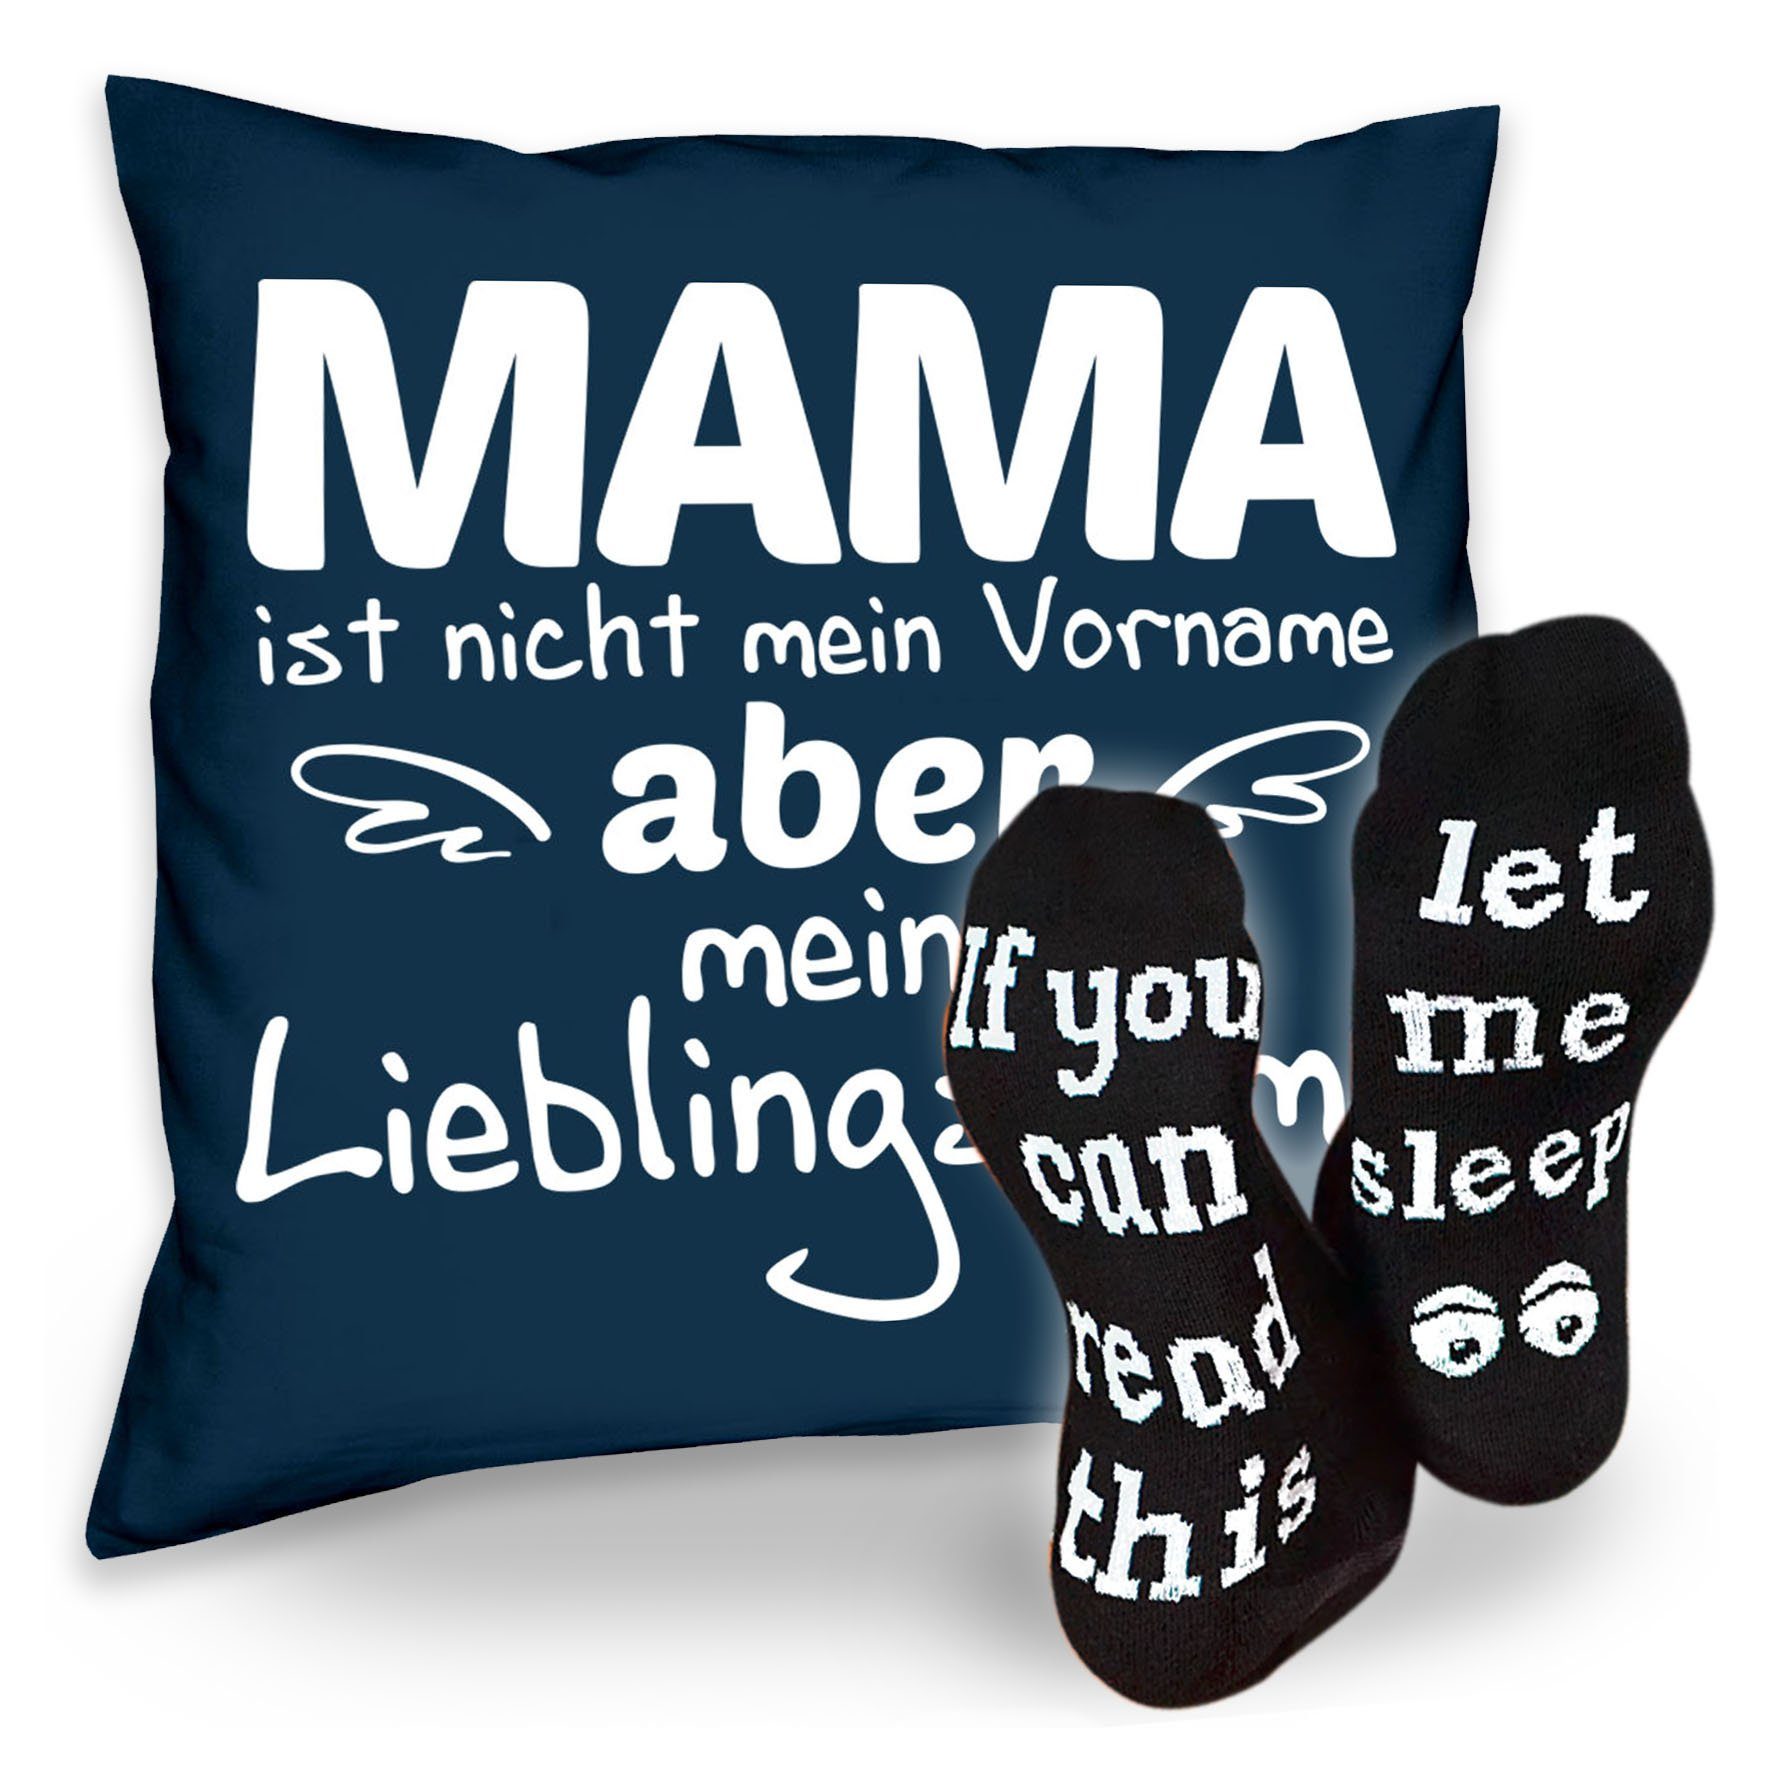 Sprüche Mama & Soreso® Lieblingsname Weihnachtsgeschenk Geschenkidee Dekokissen Kissen Sleep, Socken navy-blau